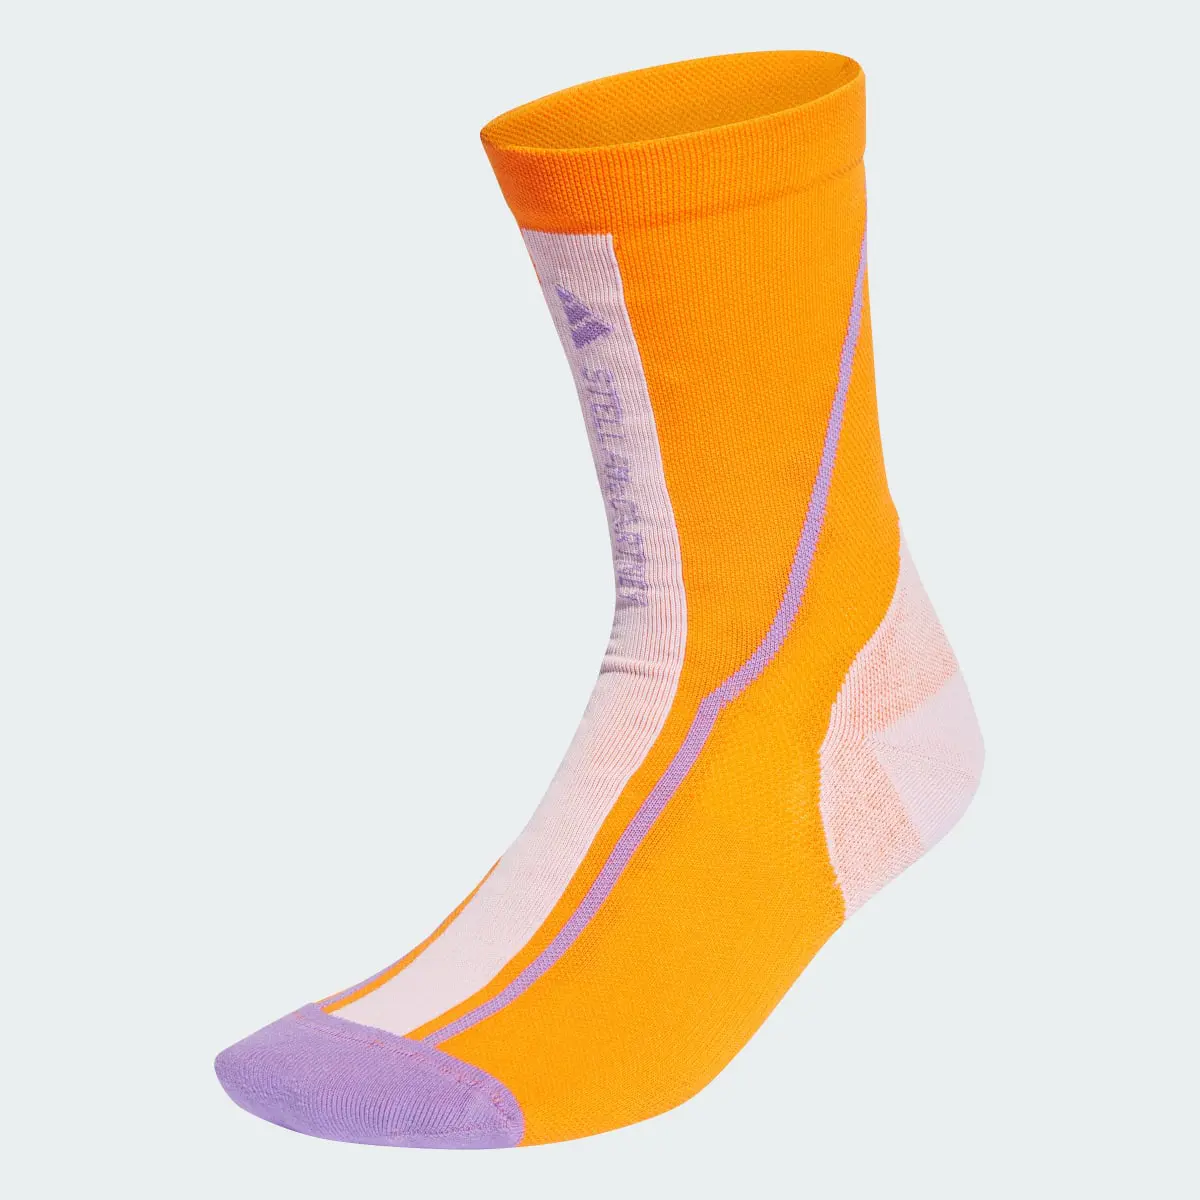 Adidas by Stella McCartney Crew Socks. 2